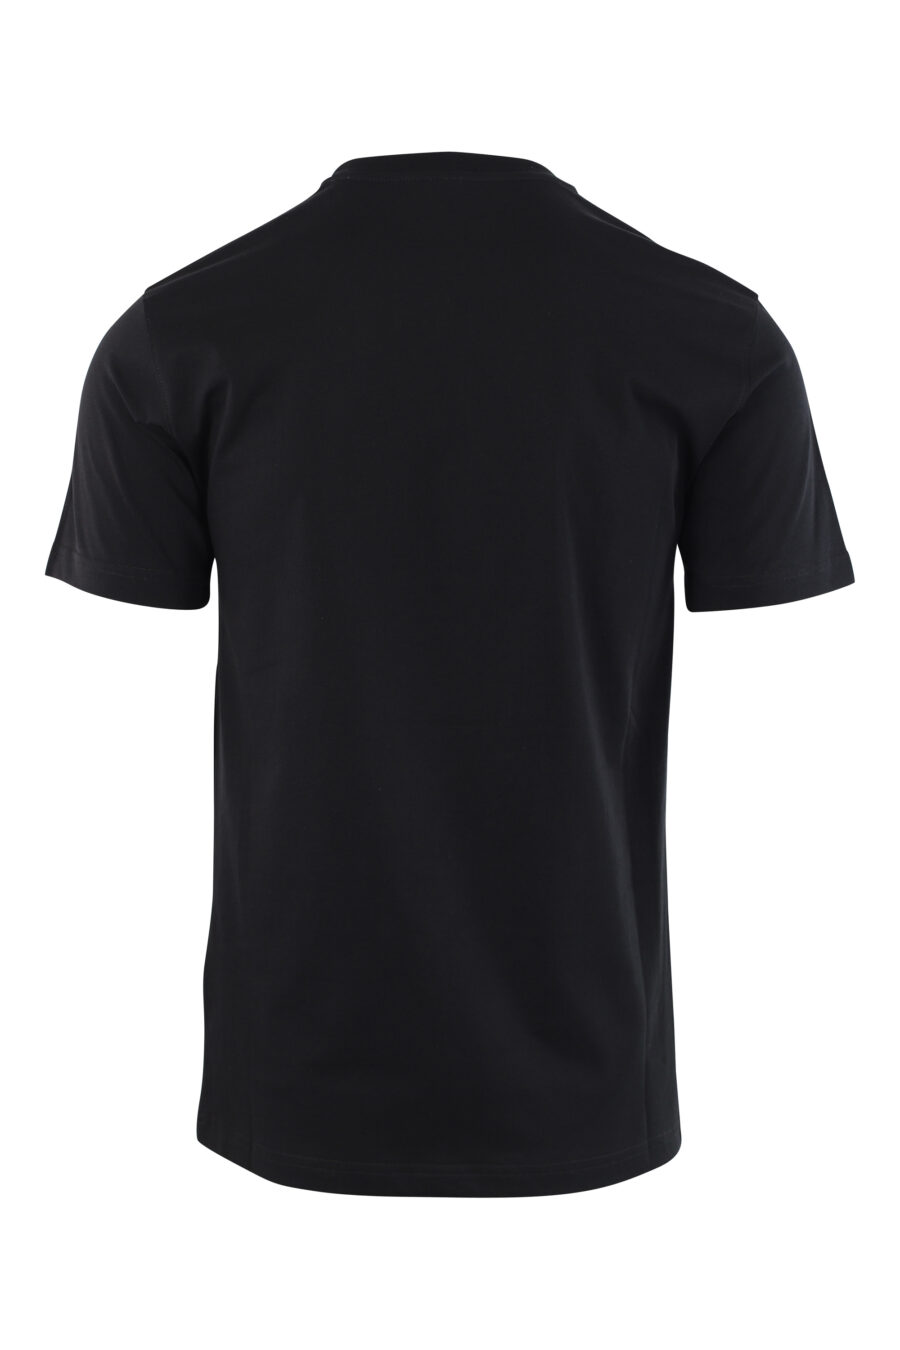 Schwarzes T-Shirt mit Maxilogo "Das ist kein Moschino-Spielzeug" - IMG 3788